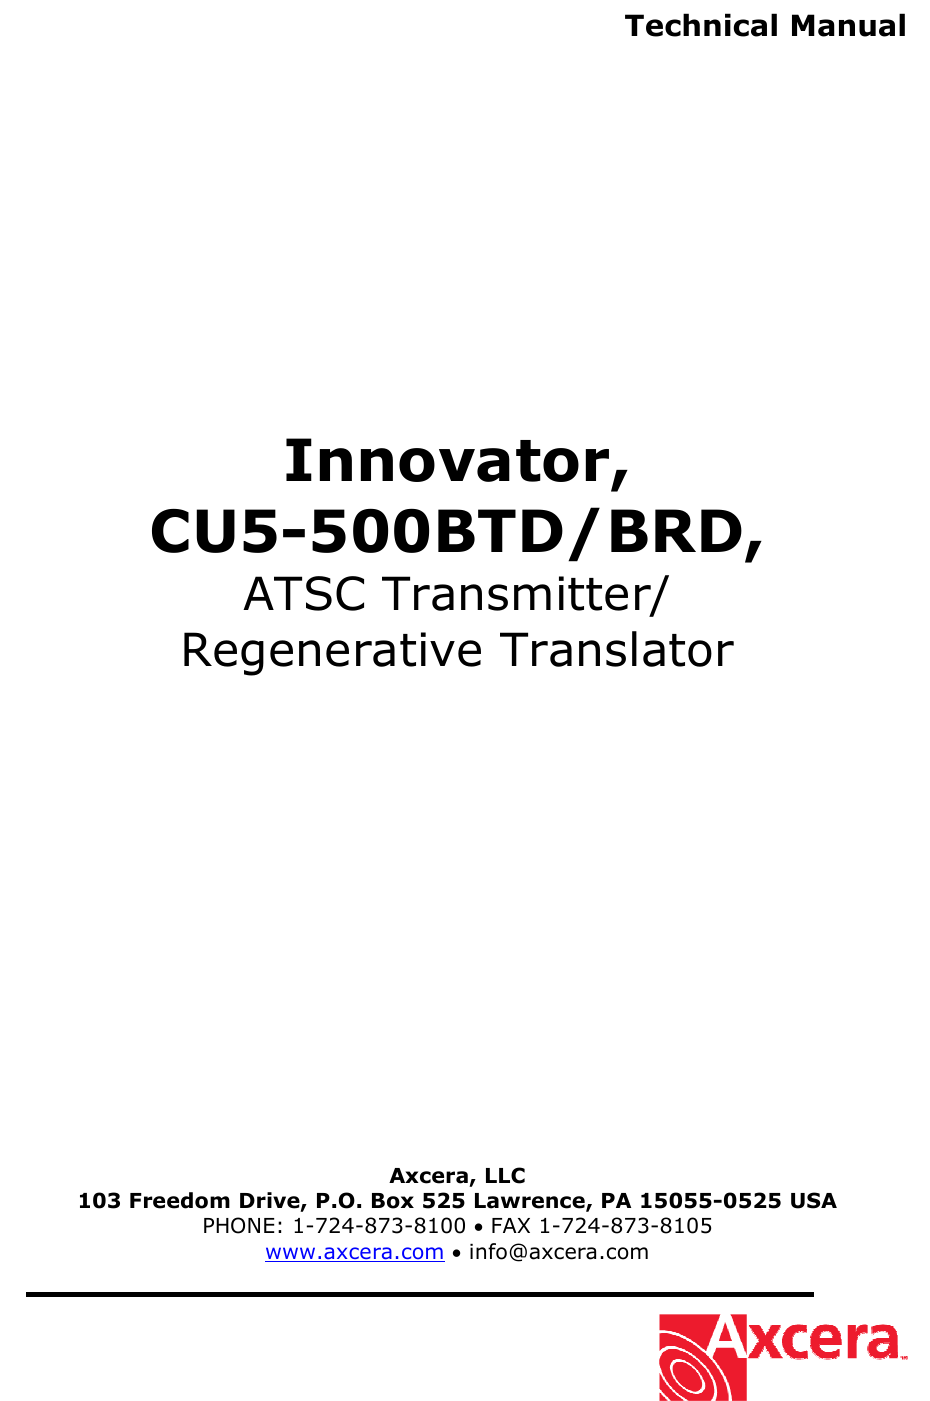  Technical Manual                Innovator, CU5-500BTD/BRD, ATSC Transmitter/ Regenerative Translator                   Axcera, LLC 103 Freedom Drive, P.O. Box 525 Lawrence, PA 15055-0525 USA PHONE: 1-724-873-8100 • FAX 1-724-873-8105 www.axcera.com • info@axcera.com     